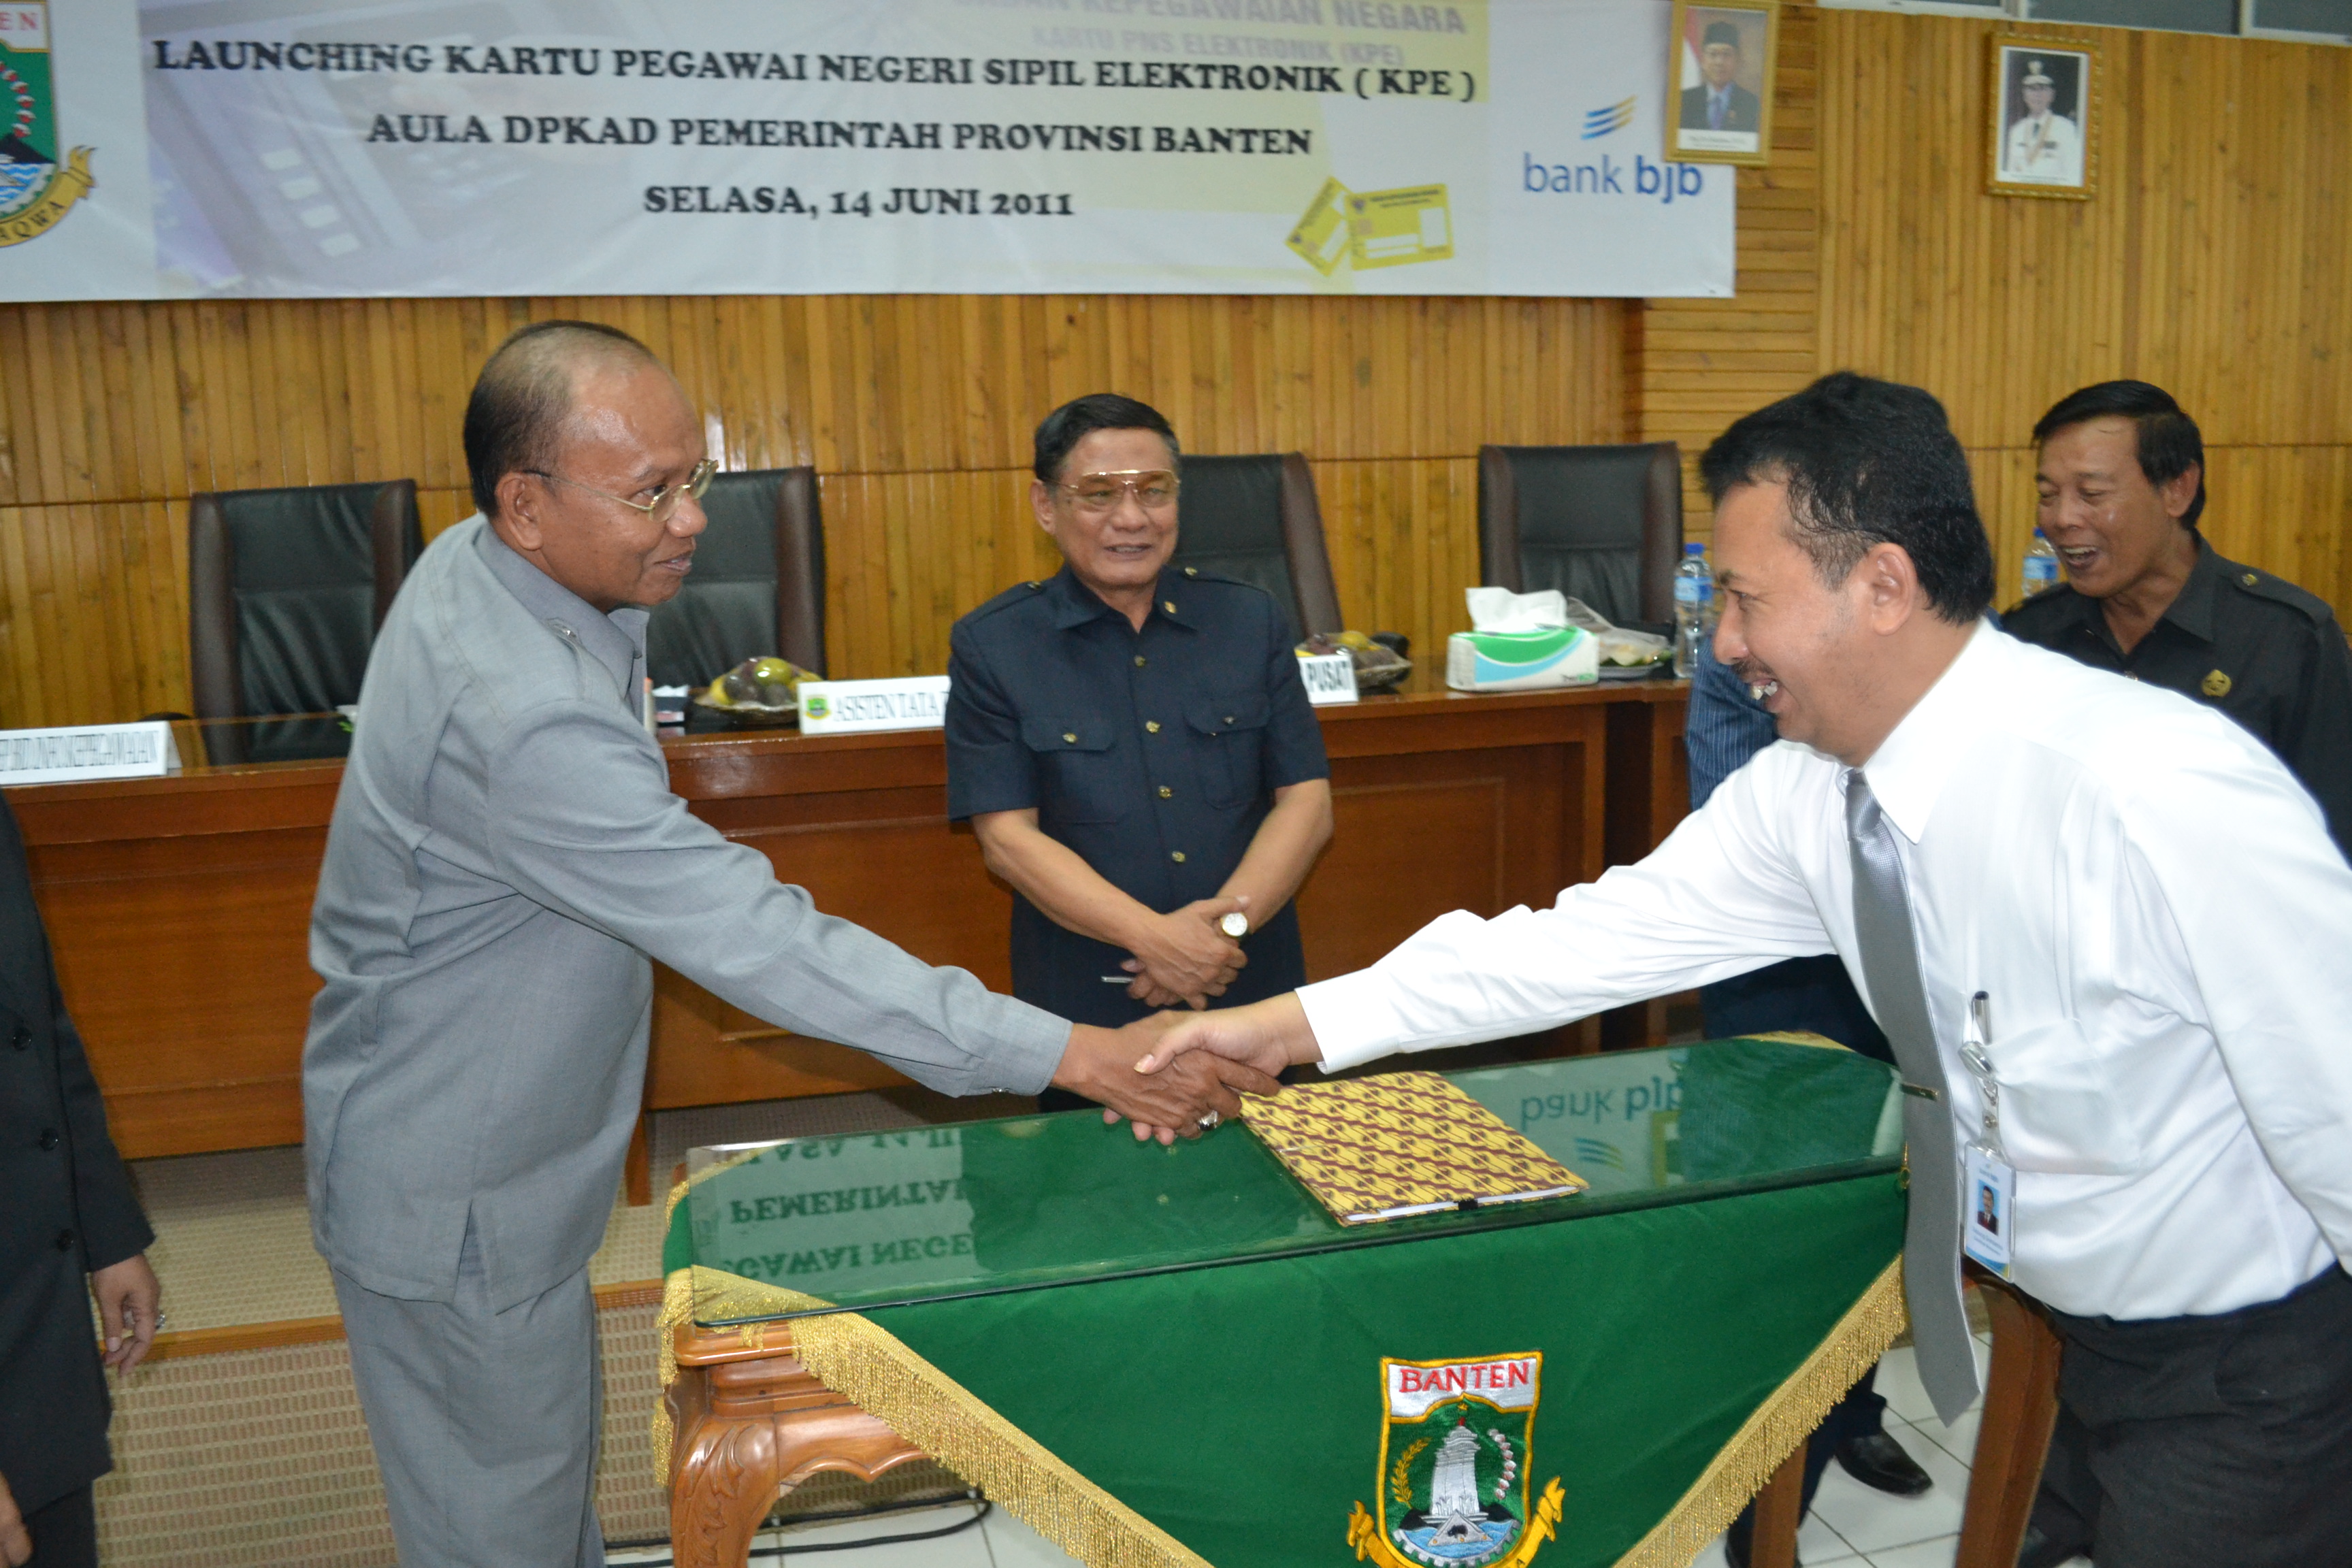  FOTO: Peluncuran dan sosialisasi KPE Bank BJB di Pemprov Banten